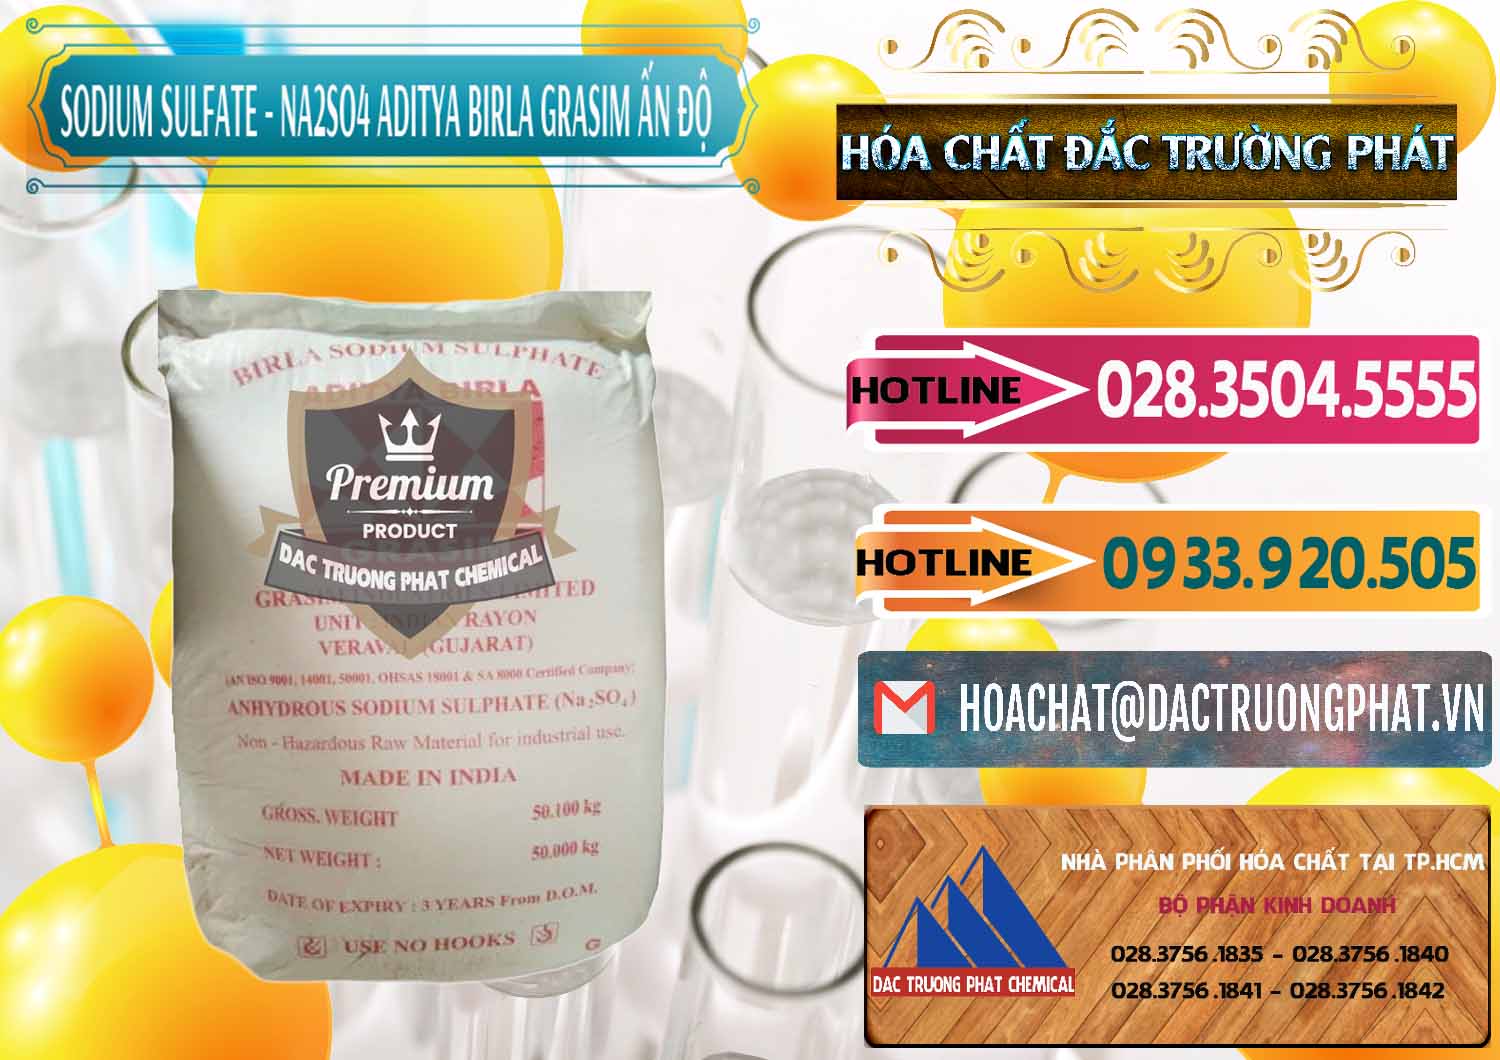 Cty bán ( cung cấp ) Sodium Sulphate - Muối Sunfat Na2SO4 Grasim Ấn Độ India - 0356 - Cty nhập khẩu & cung cấp hóa chất tại TP.HCM - dactruongphat.vn